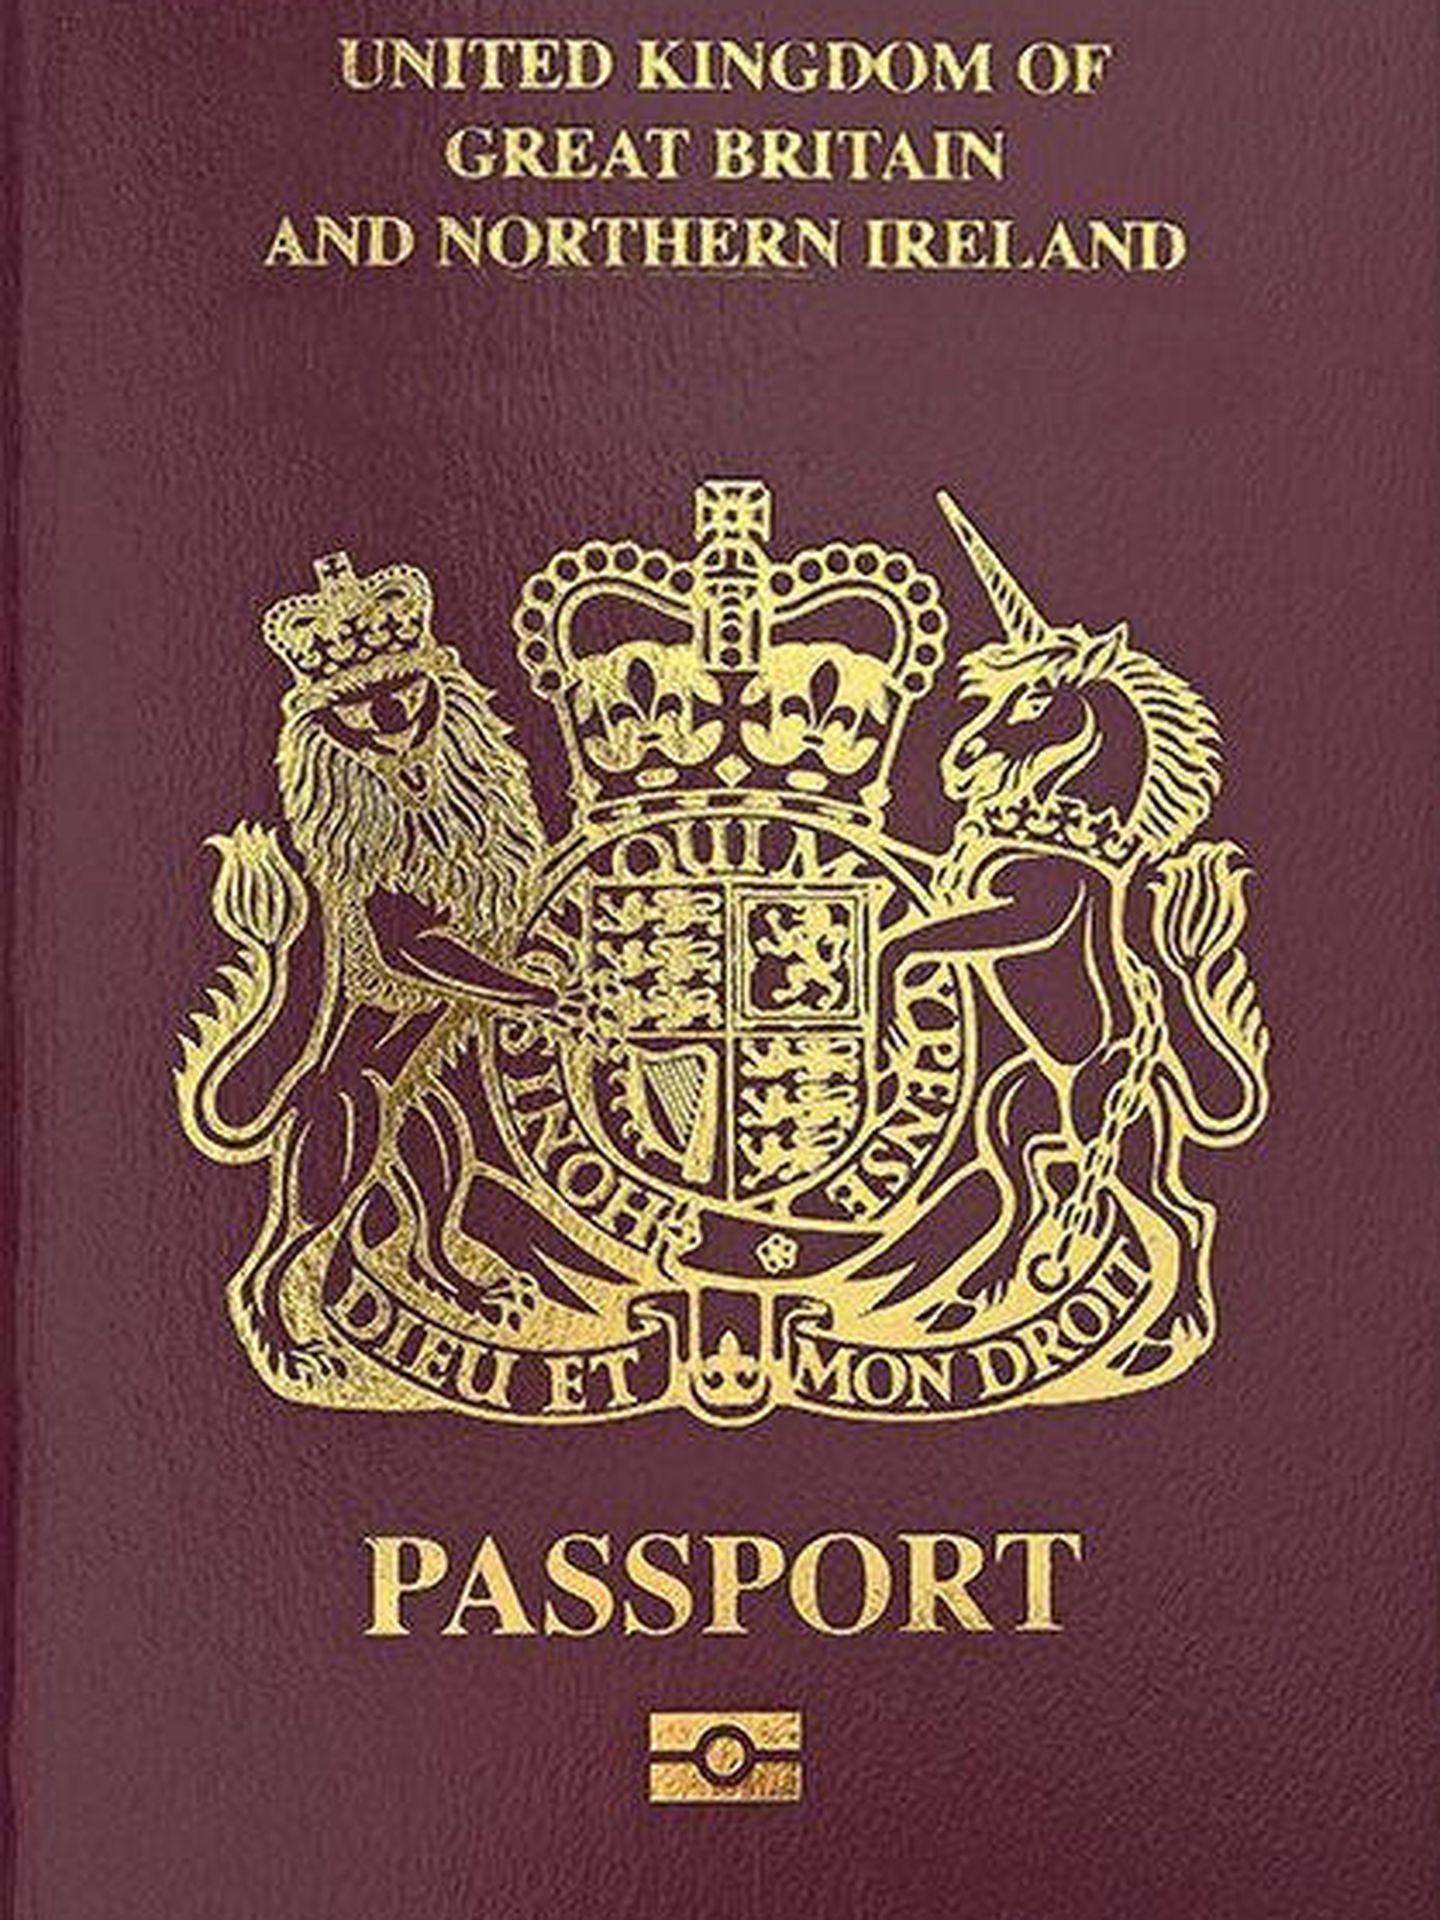 Pasaporte británico. Foto: Wikipedia